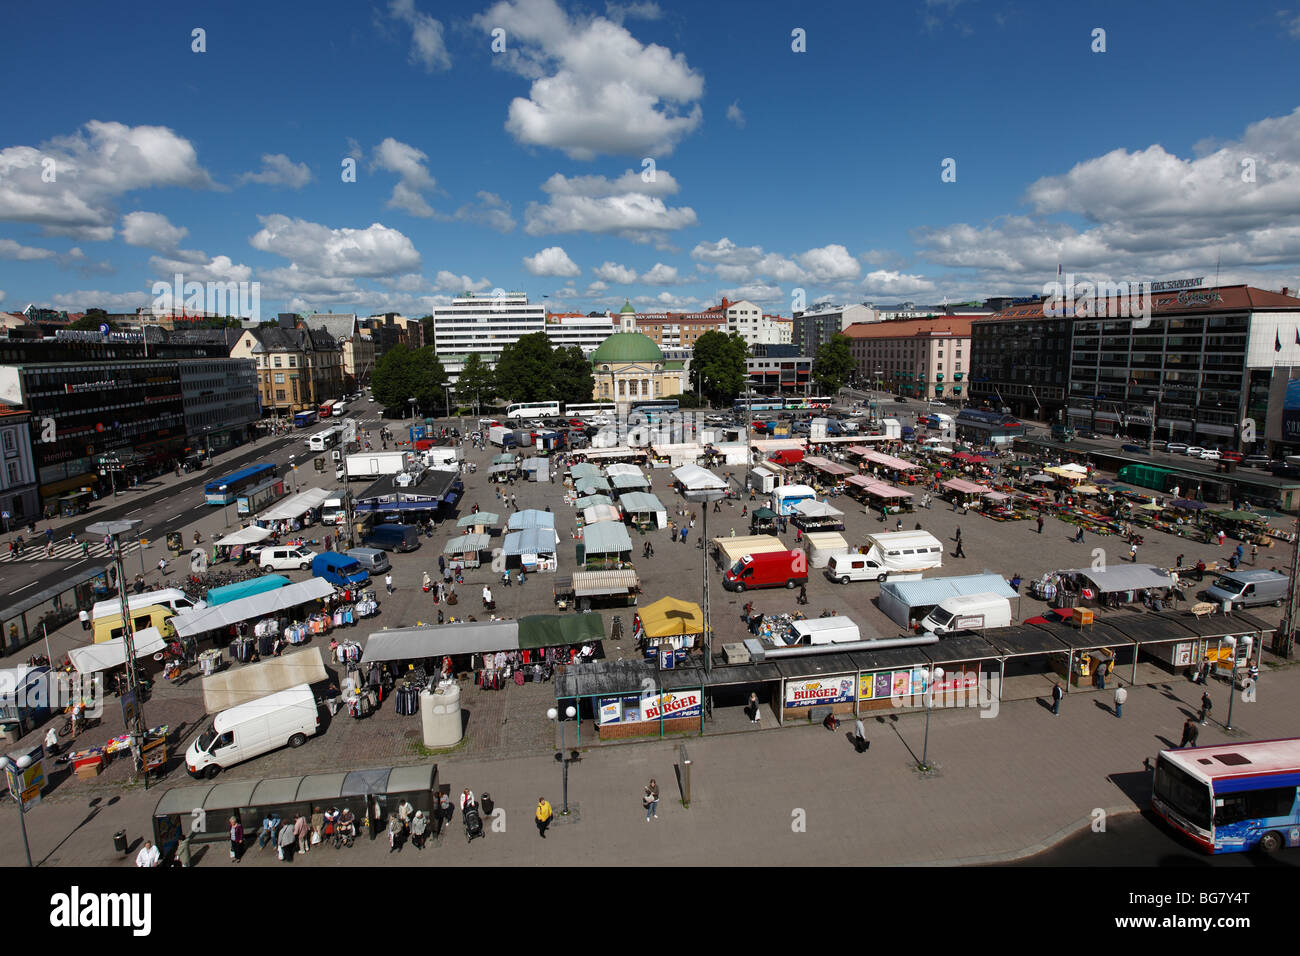 Finland, Region of Finland Proper, Western Finland, Turku, Market Square, Kauppatori Square Stock Photo